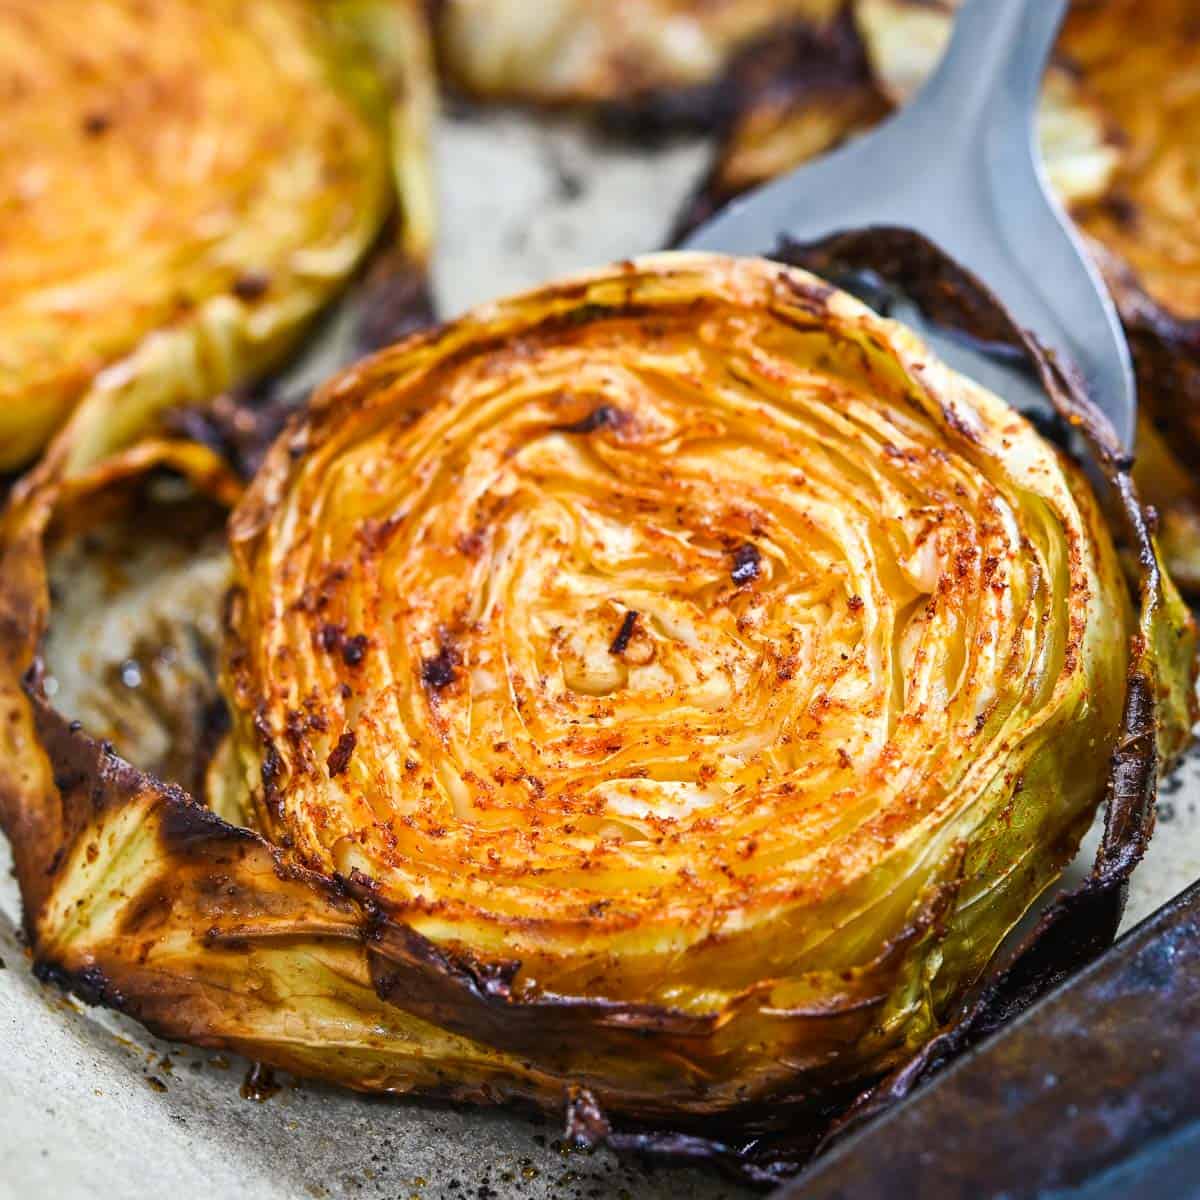 https://eatsomethingvegan.com/wp-content/uploads/2020/10/Garlic-Roasted-Cabbage-1.jpg